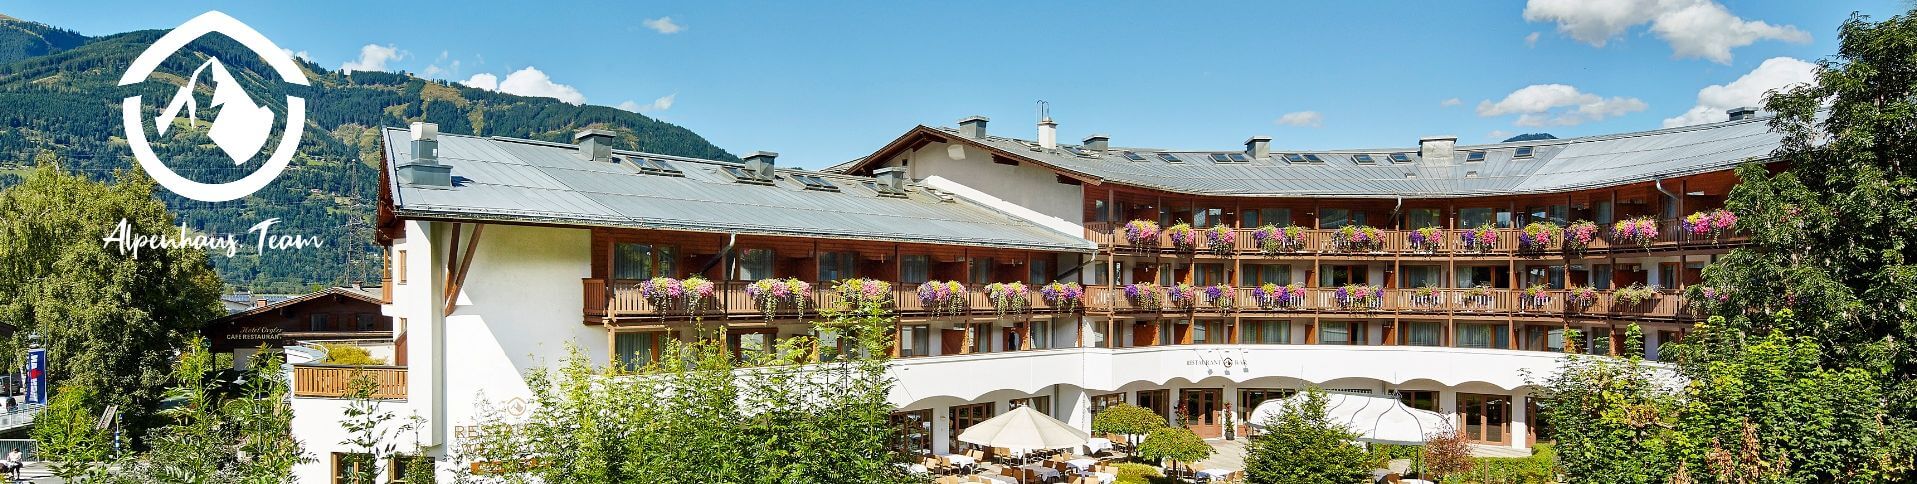 Das Alpenhaus Hotels & Resorts Titelbild